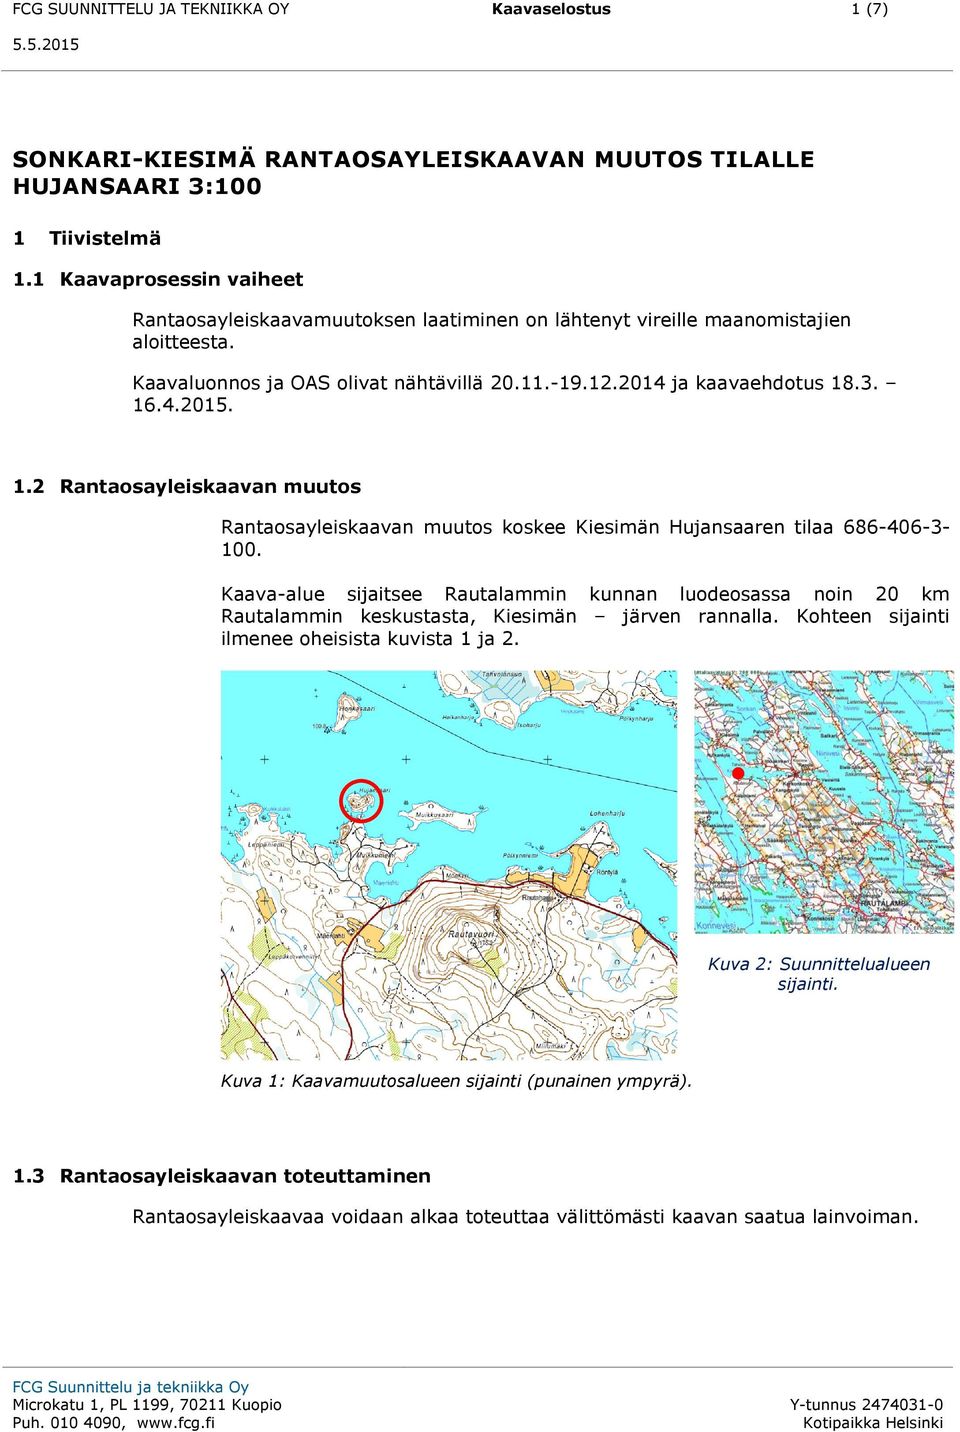 1.2 Rantaosayleiskaavan muutos Rantaosayleiskaavan muutos koskee Kiesimän Hujansaaren tilaa 686-406-3-100.